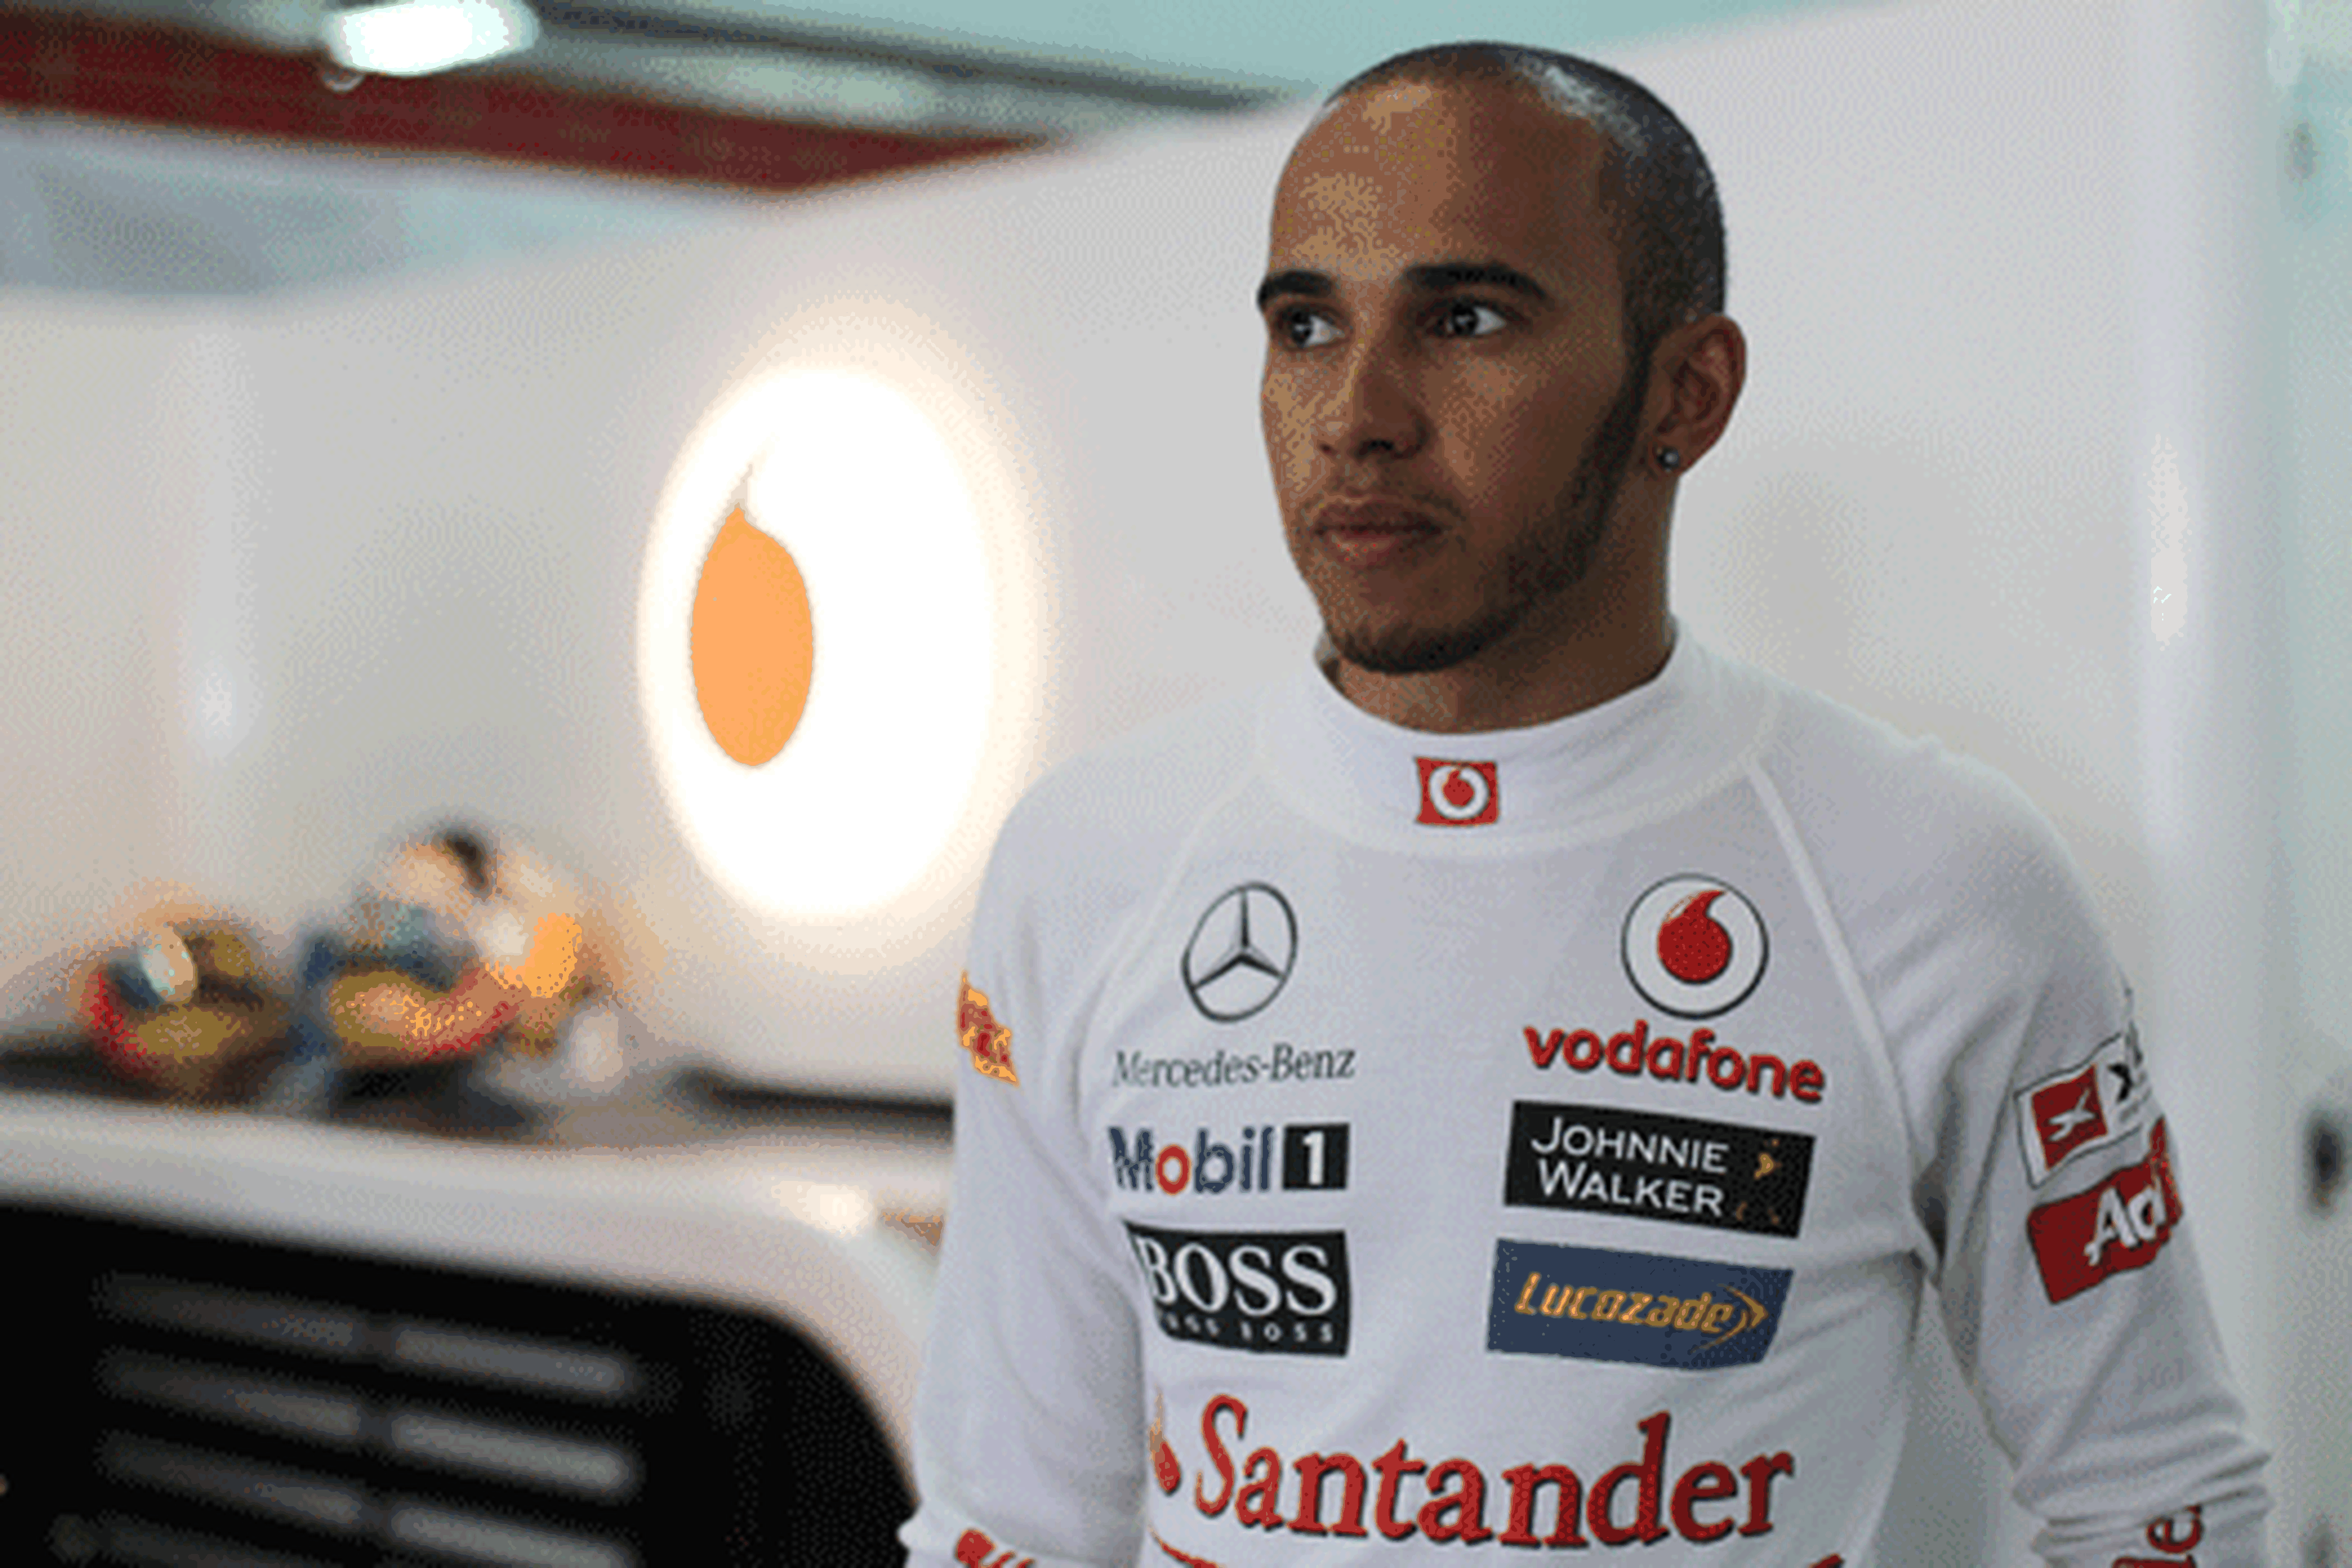 Lewis Hamilton - McLaren - GPMalasia2012